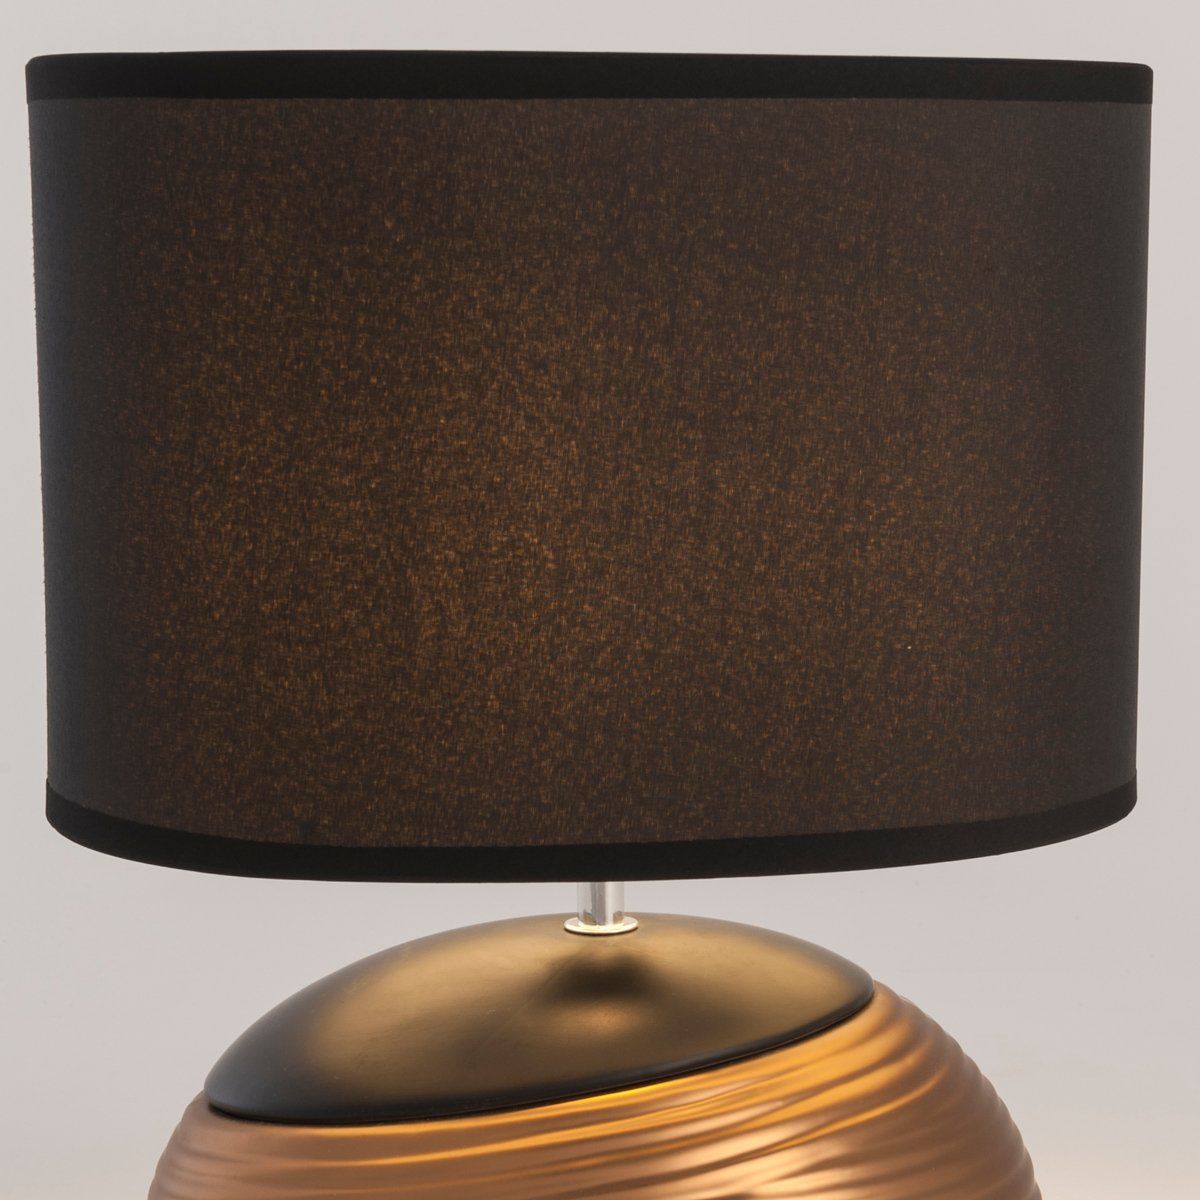 Lampe MEDELLIN noire et cuivre en céramique